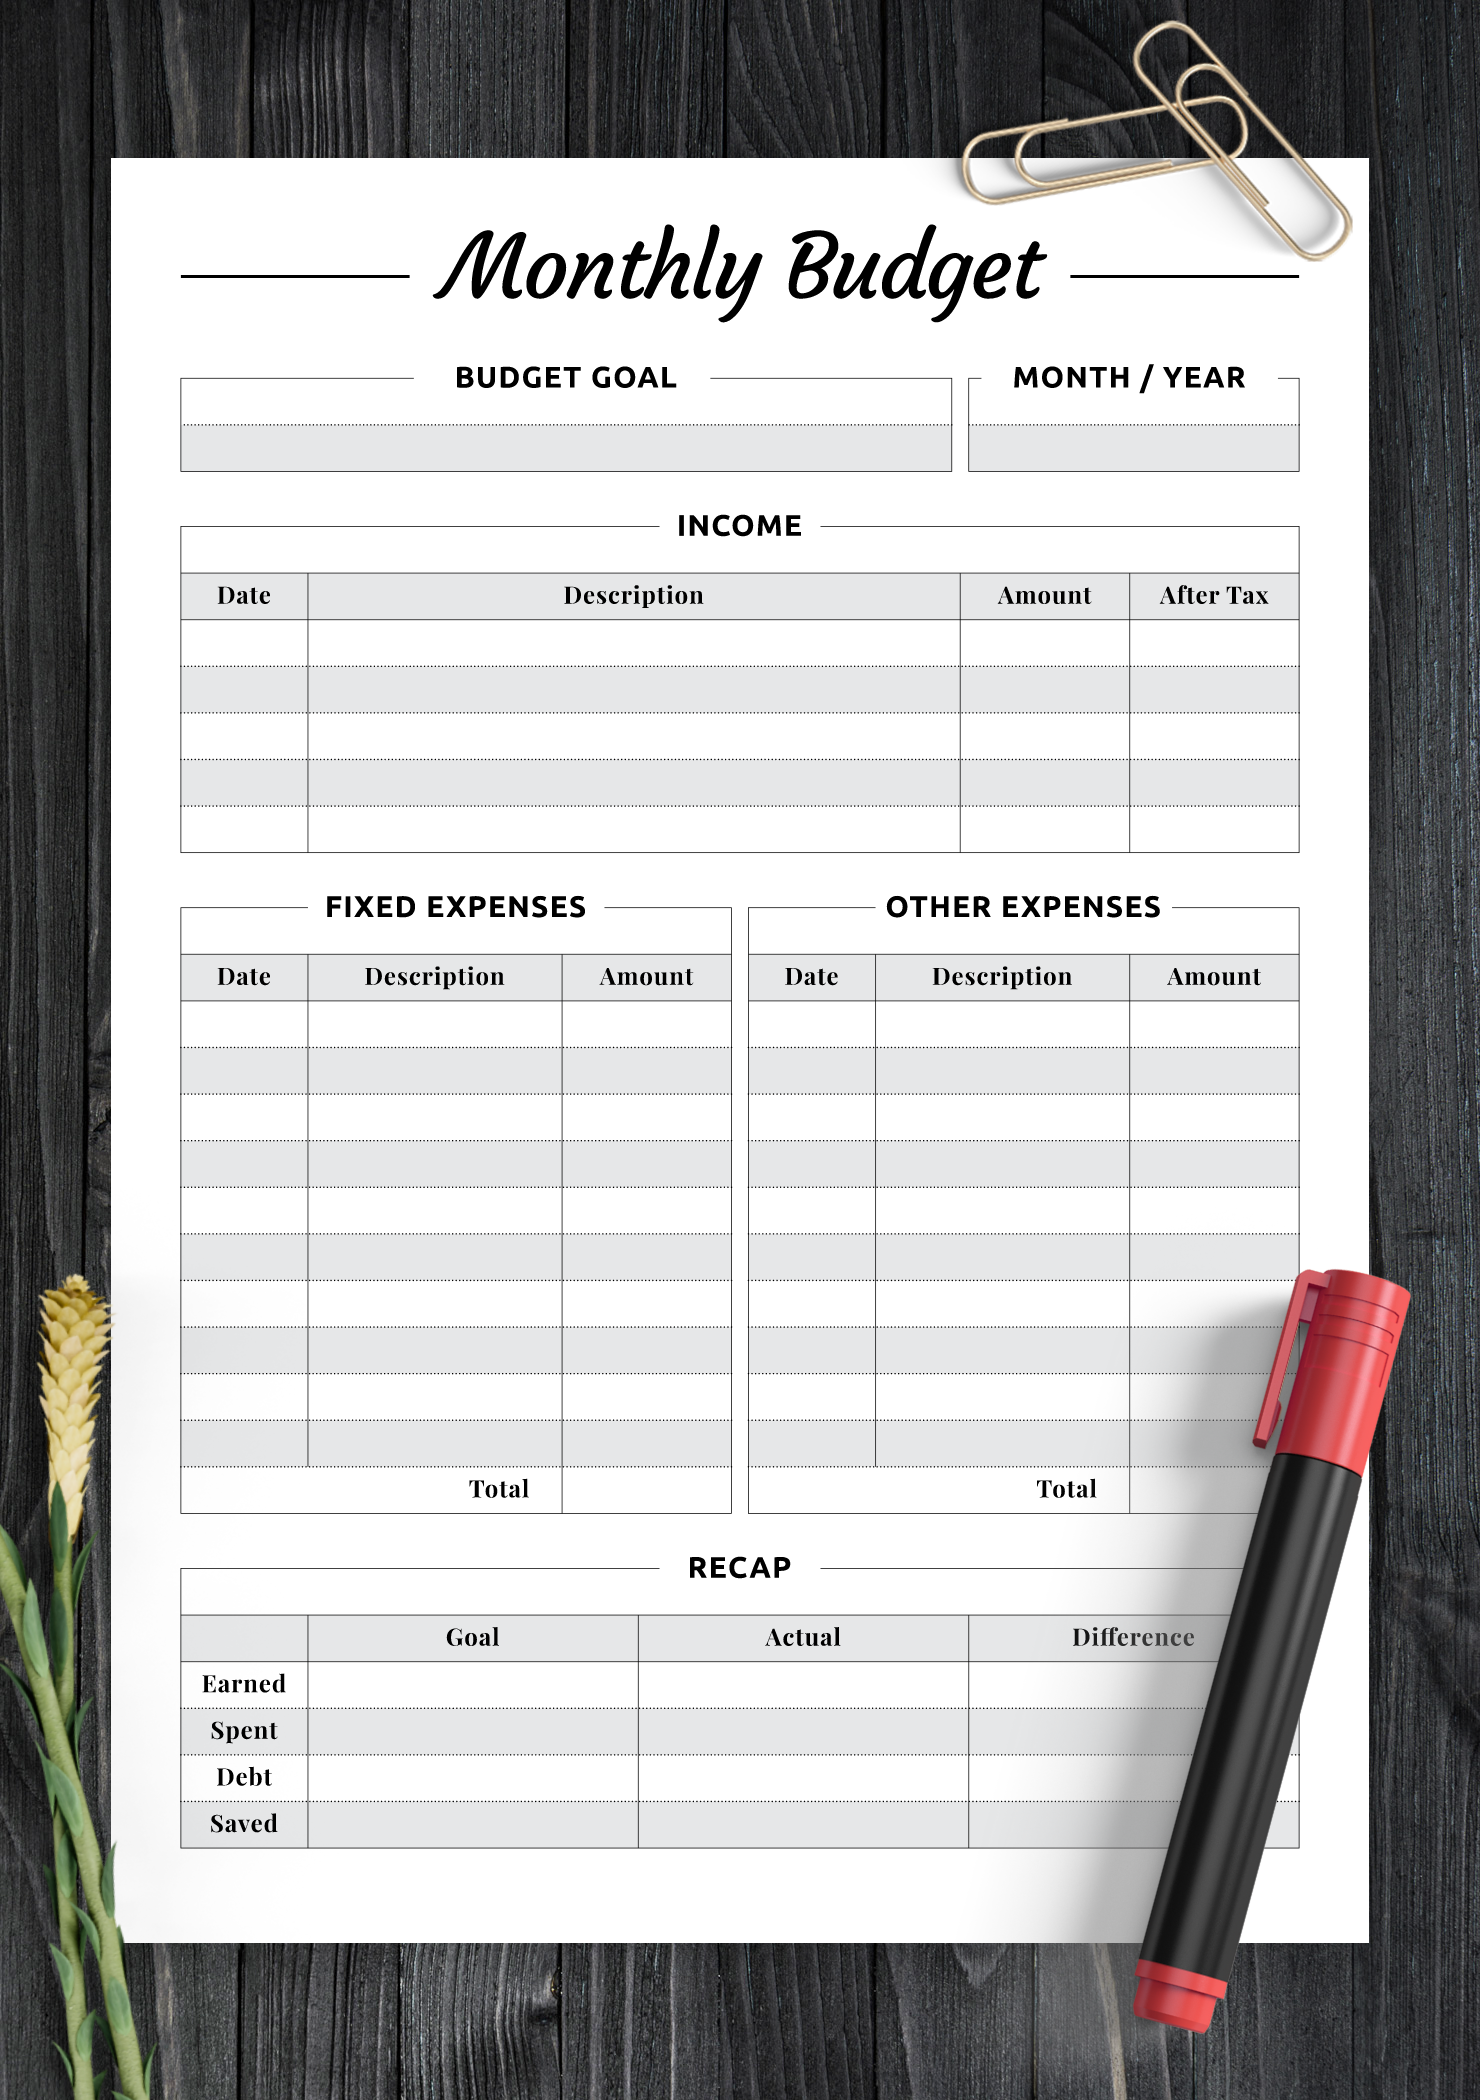 home budget planning worksheet